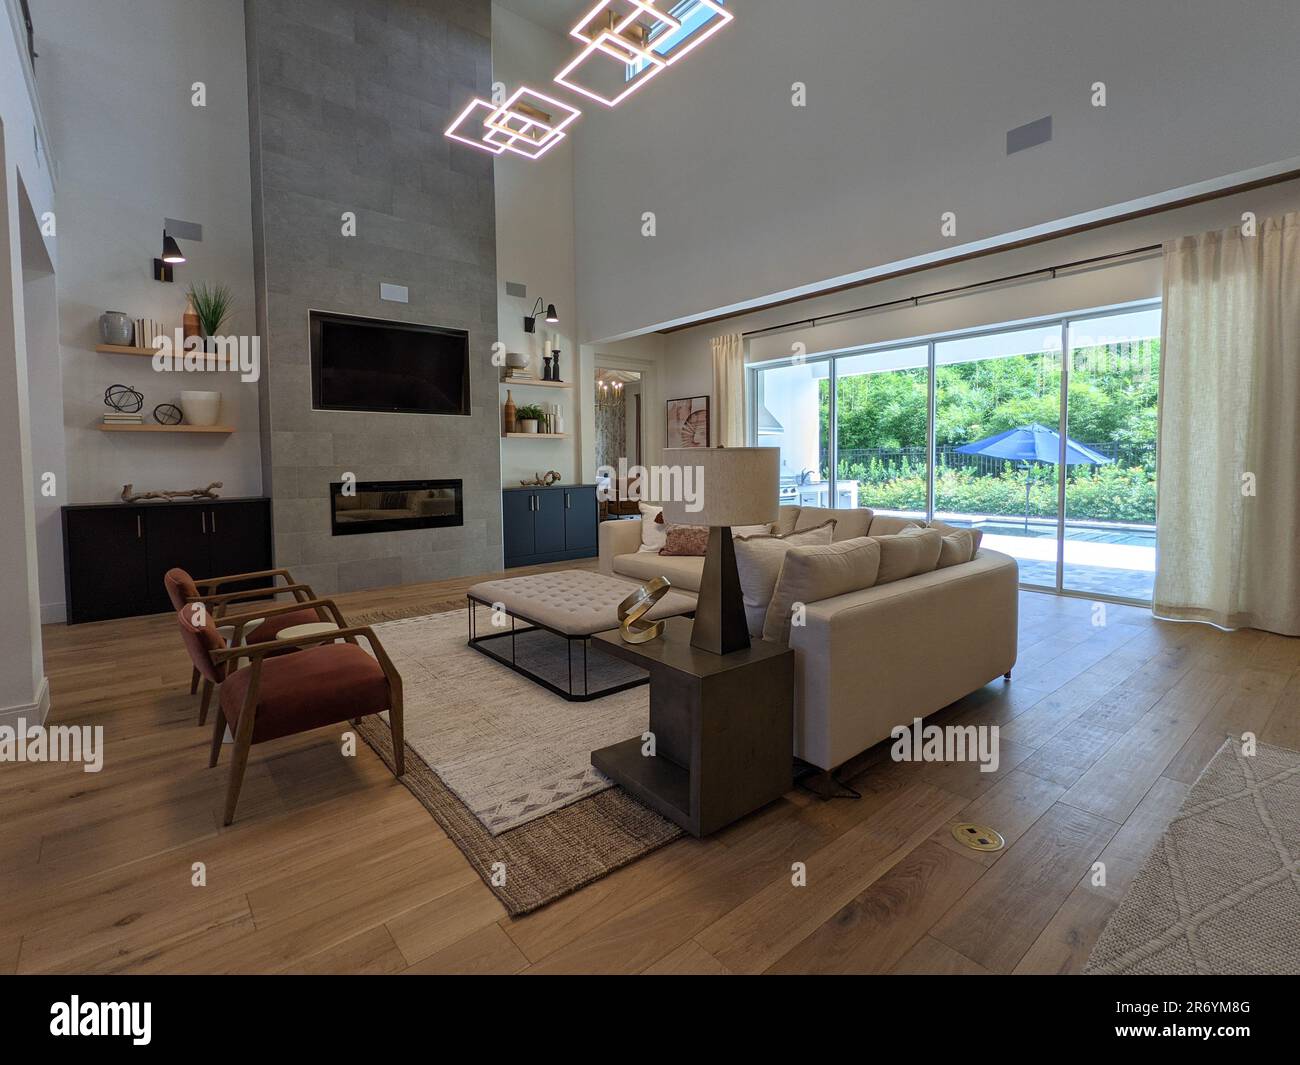 Ein geräumiges Wohnzimmer, komplett mit einer Reihe von Möbelstücken und Beleuchtungskörpern. Stockfoto